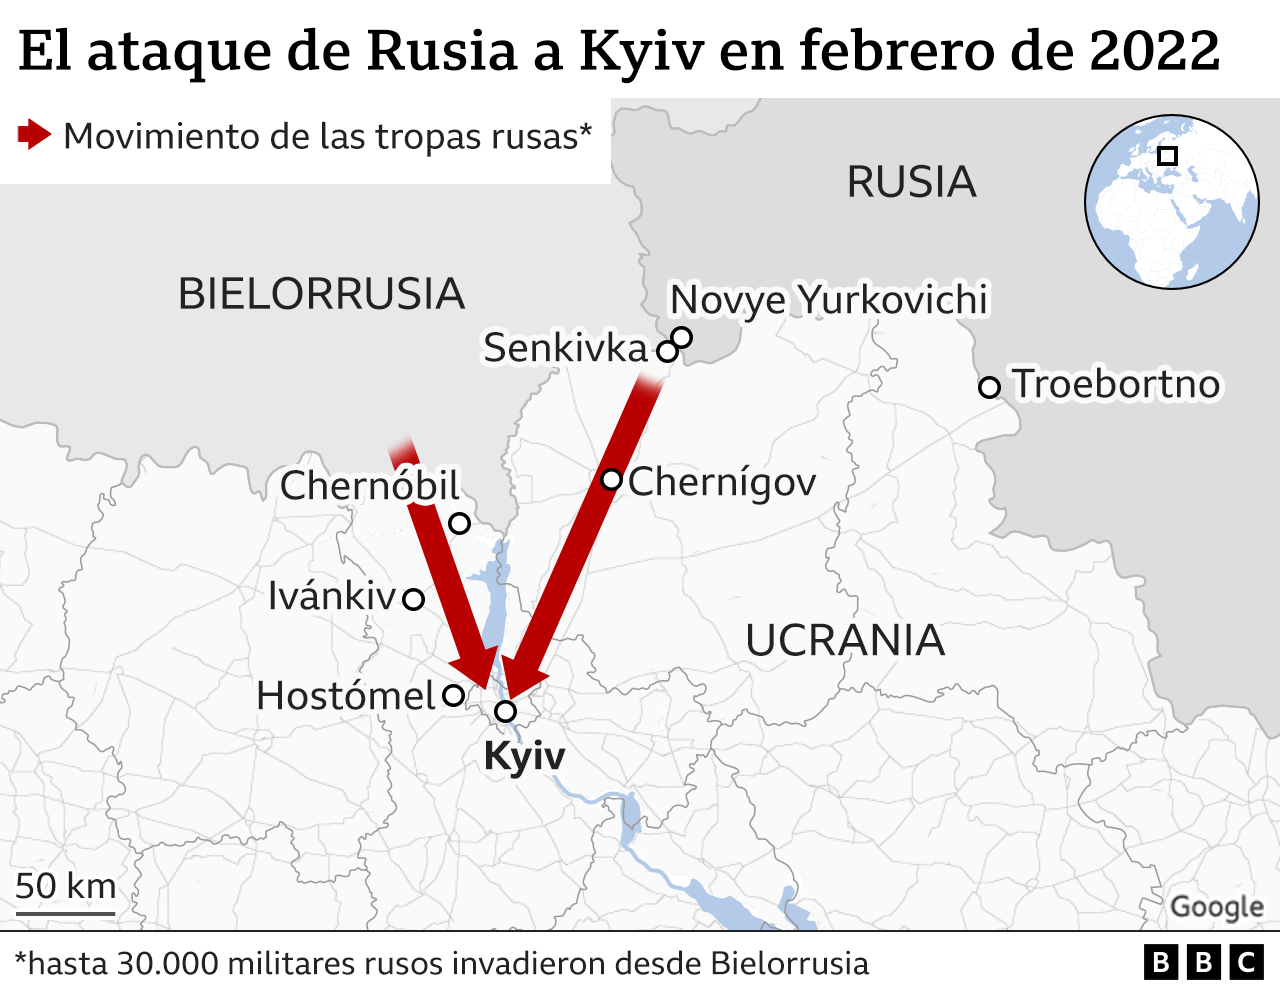 Gráfico que muestra como las tropas rusas salieron desde Bielorrusia a invadir Ucrania en febrero de 2022